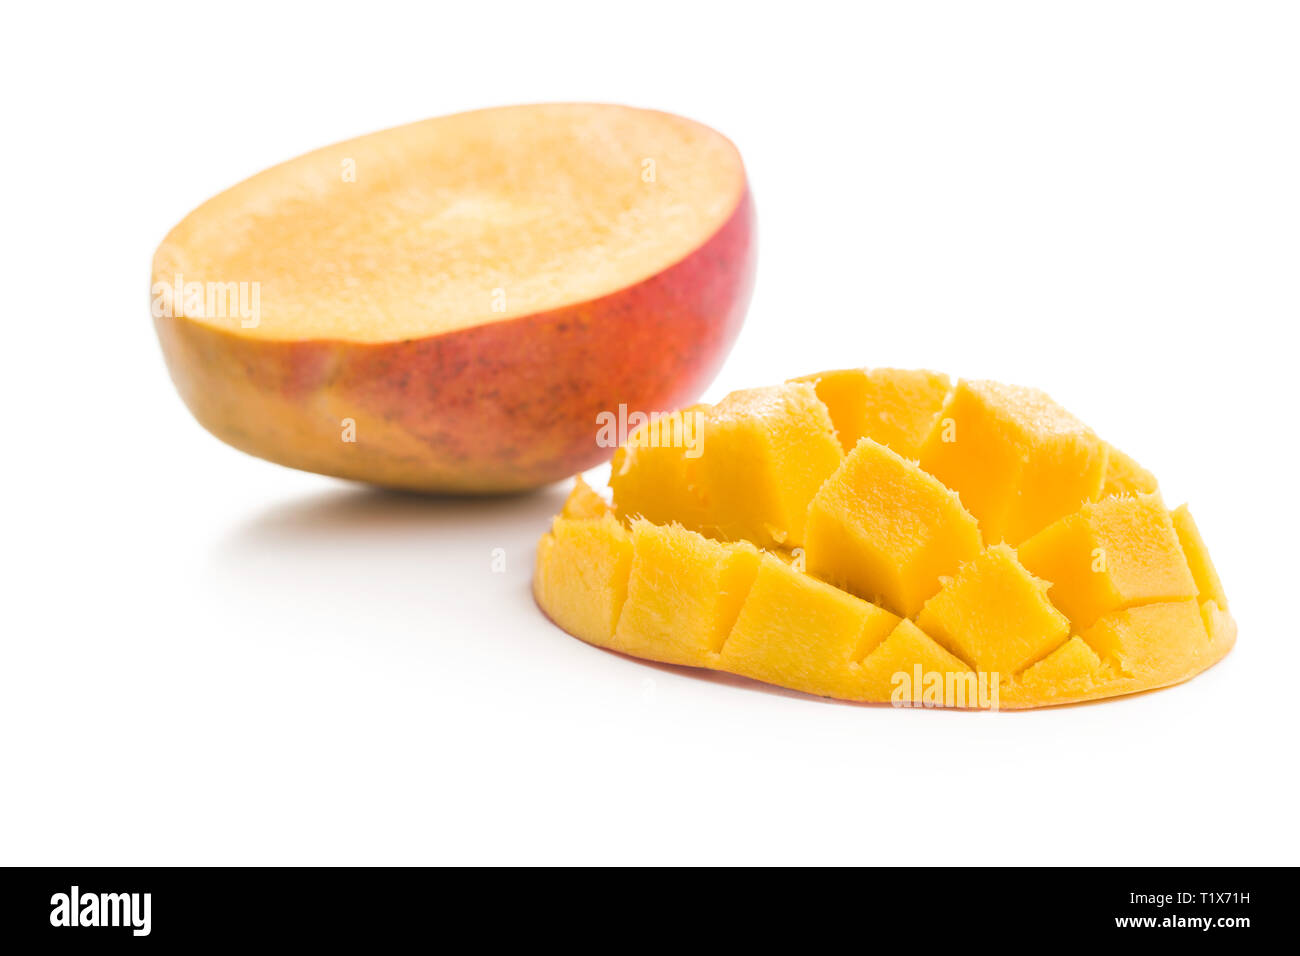 Ripe mango fruit isolated on white background. Stock Photo